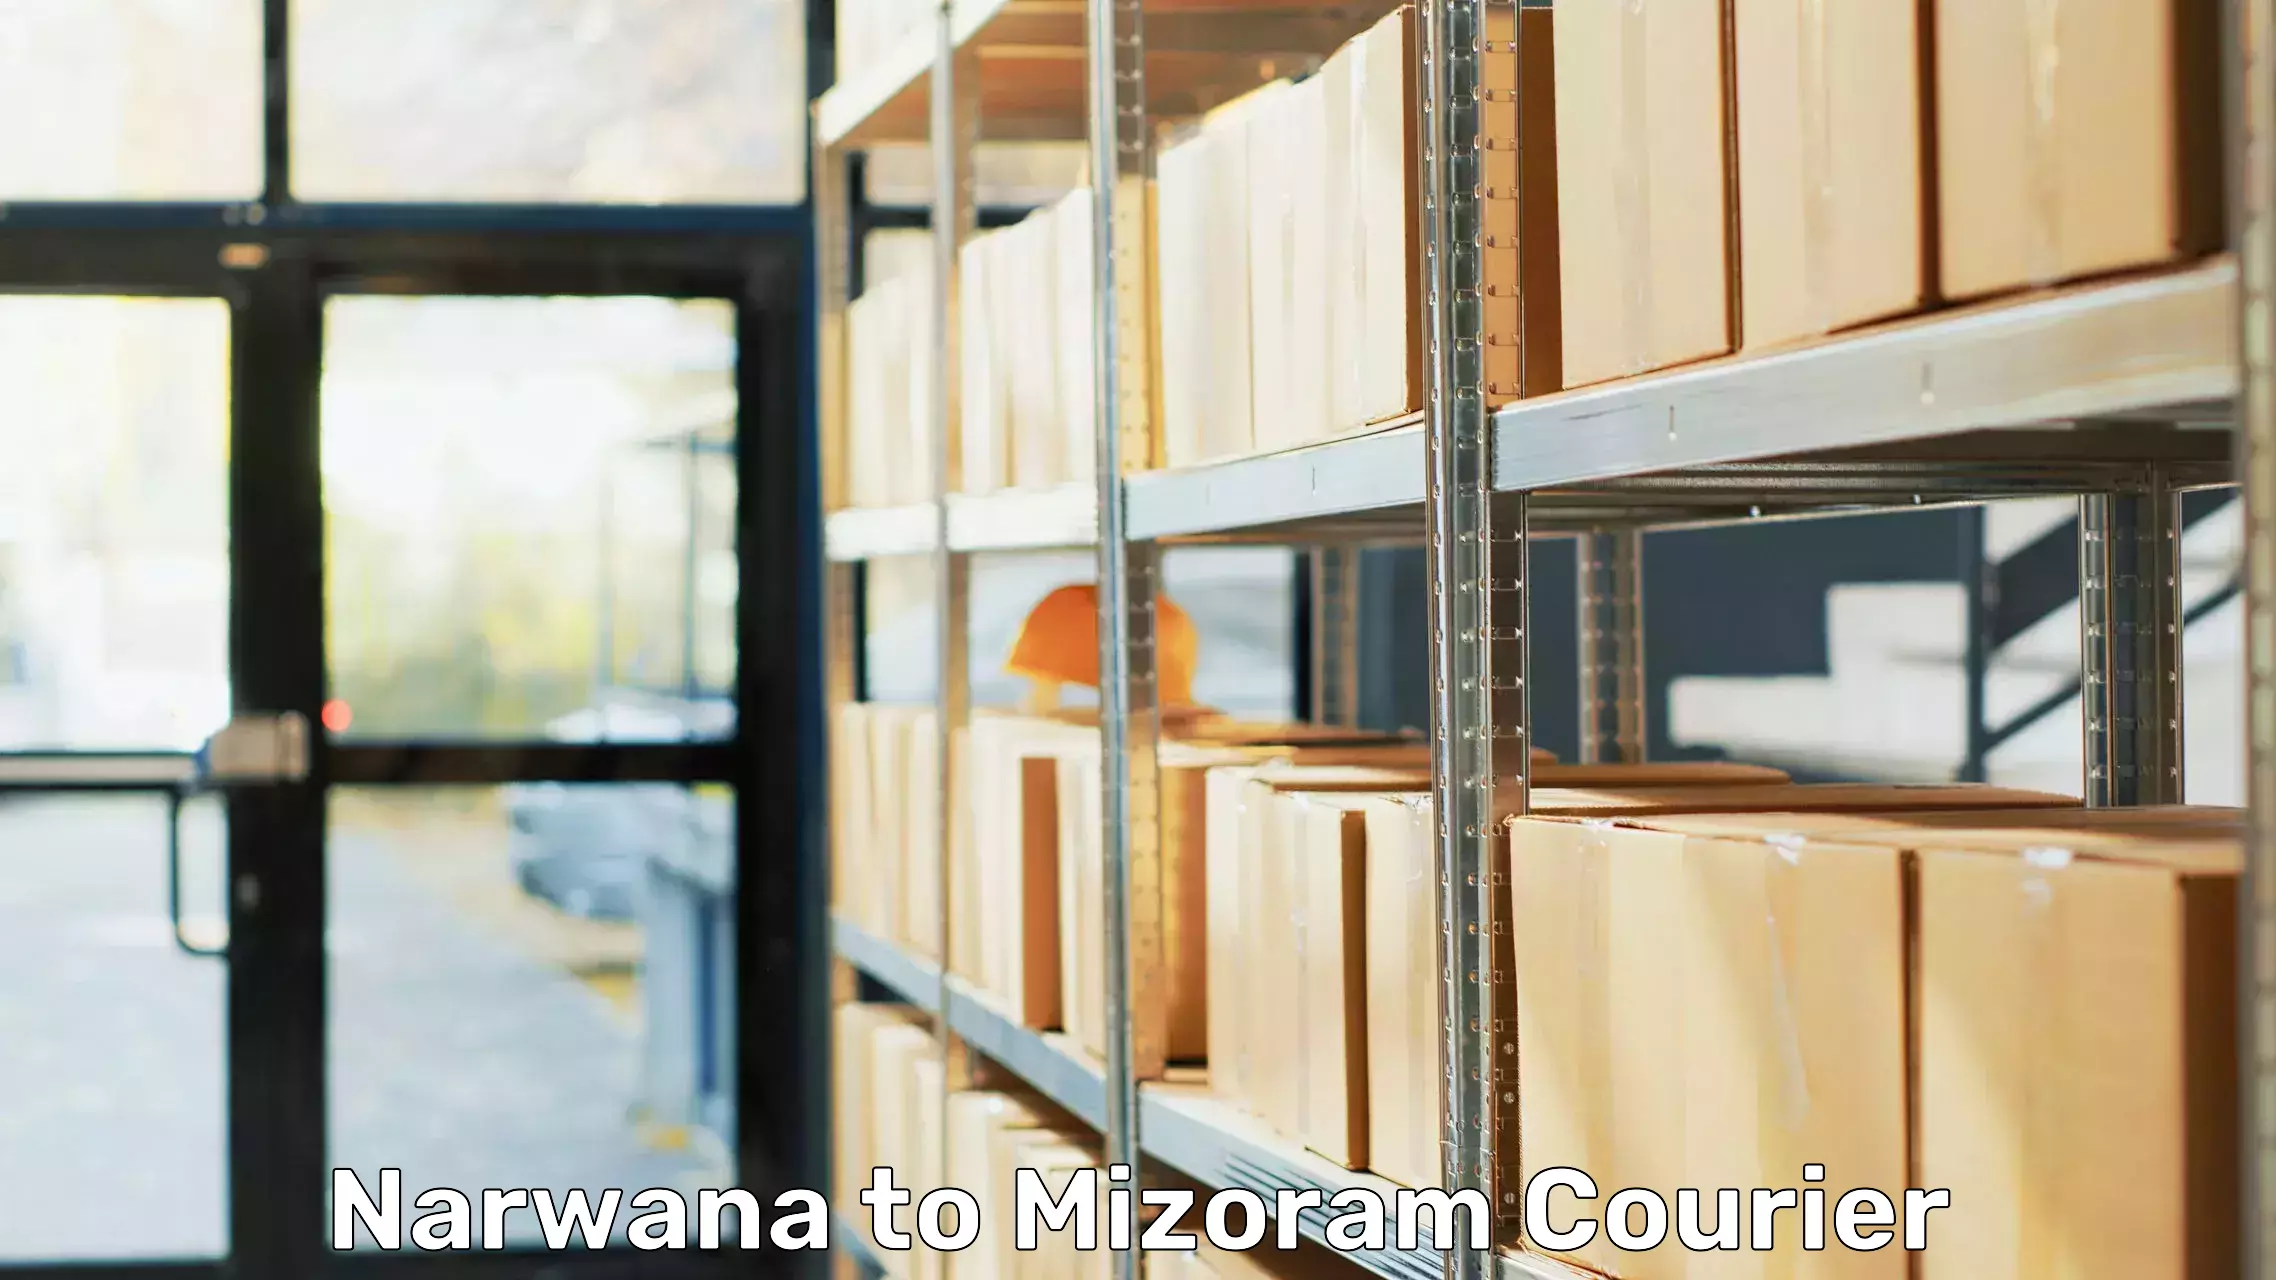 Professional home movers Narwana to Mizoram